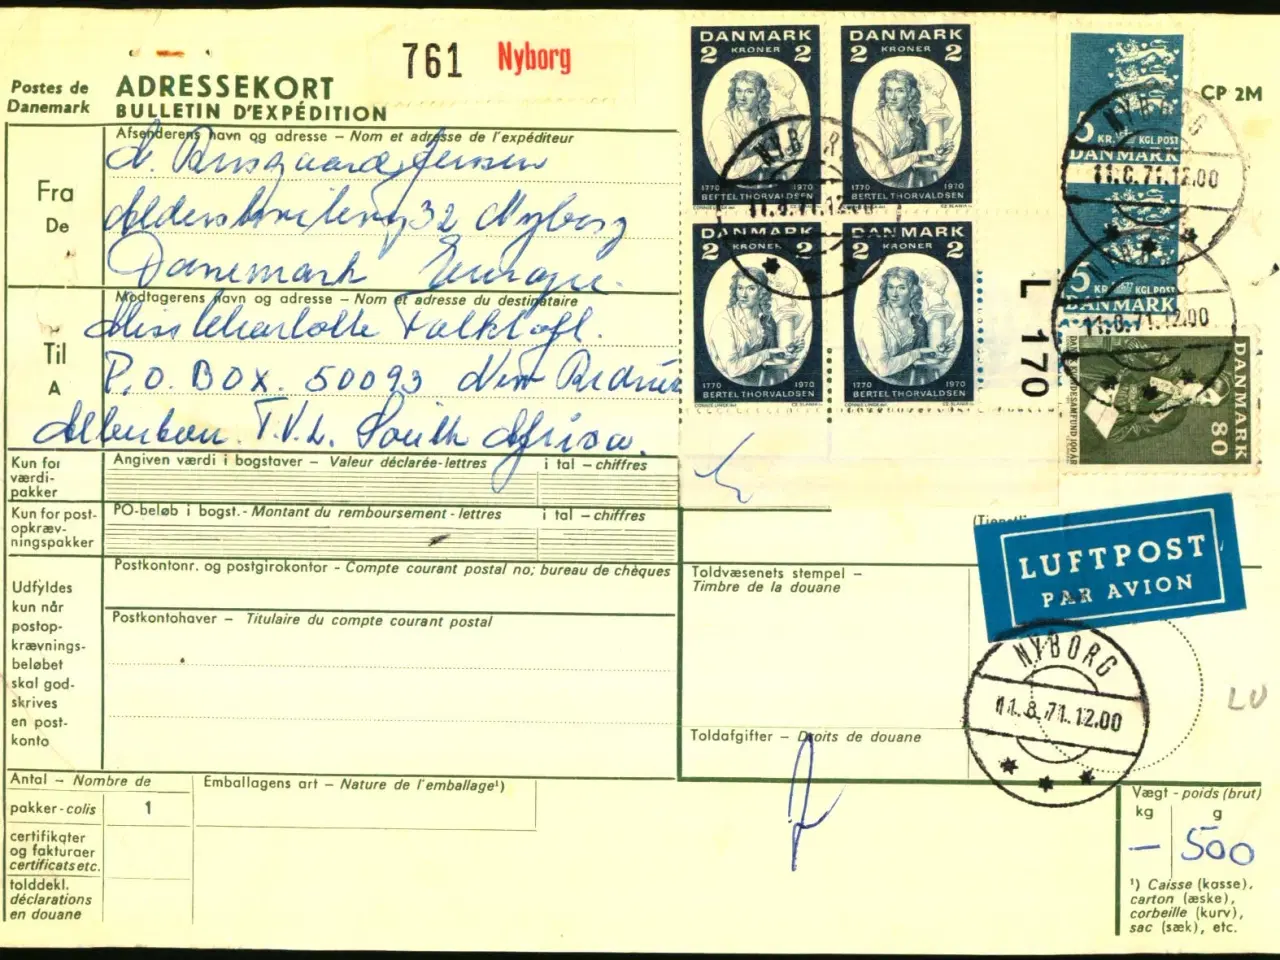 Billede 1 - Luftpost - Internationalt Adressekort for luftpakke til Syd Afrika fra Danmark - 11 - 8 - 71